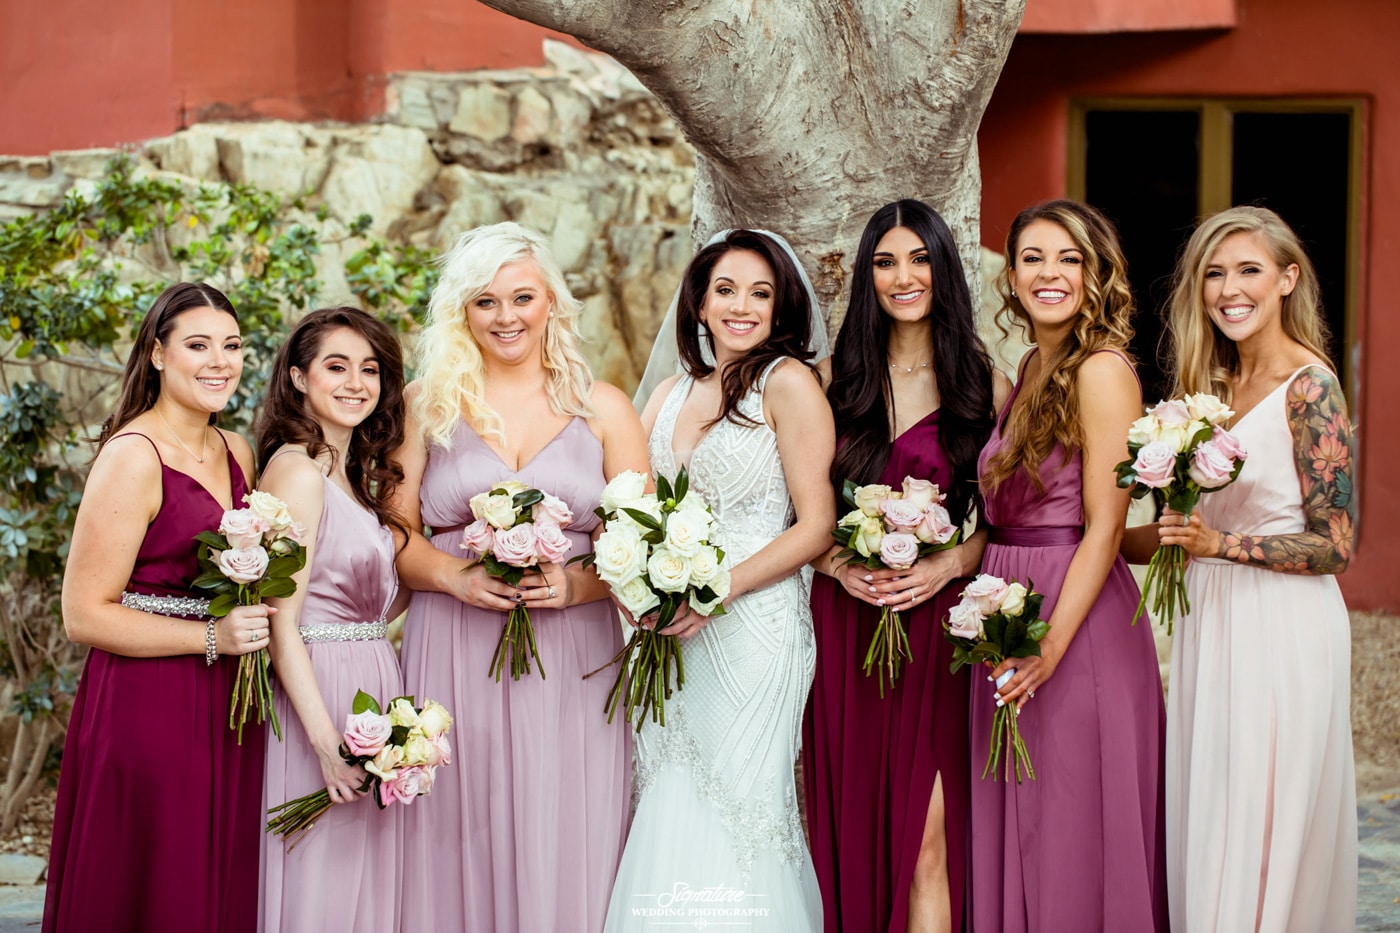 Bride and bridesmaids smiling at camera